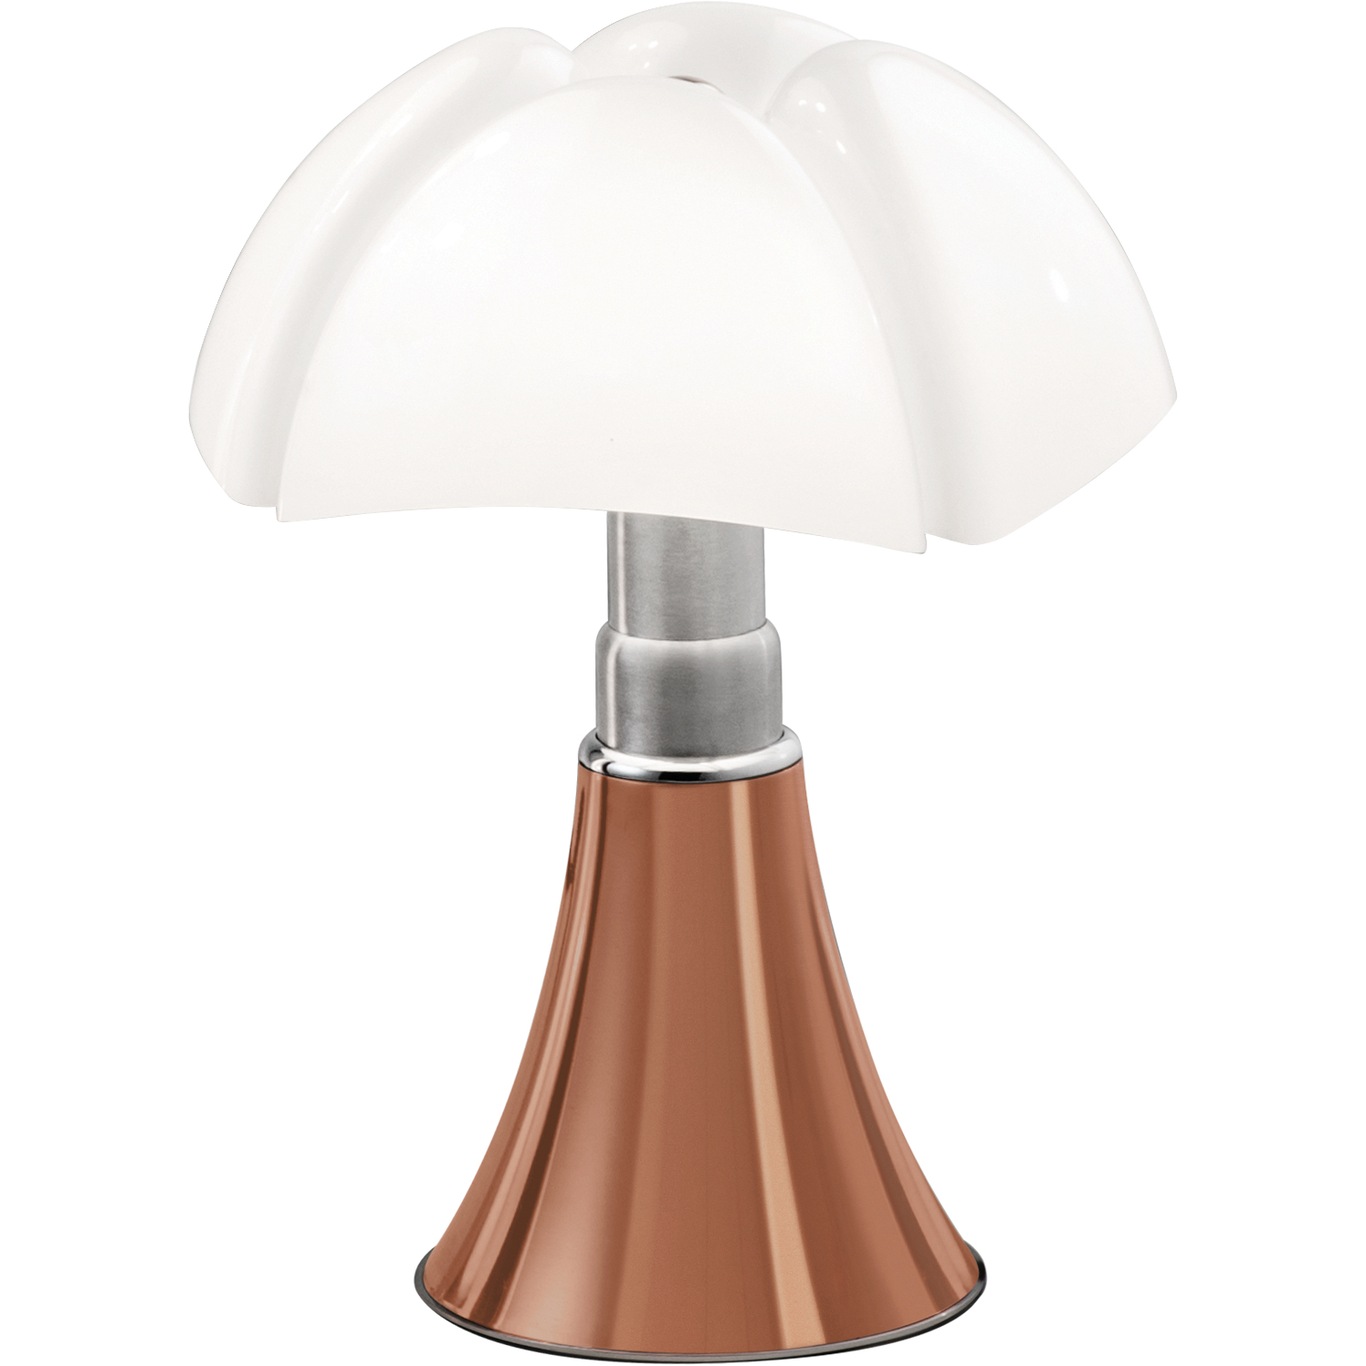 Pipistrello Mini Table Lamp, Copper